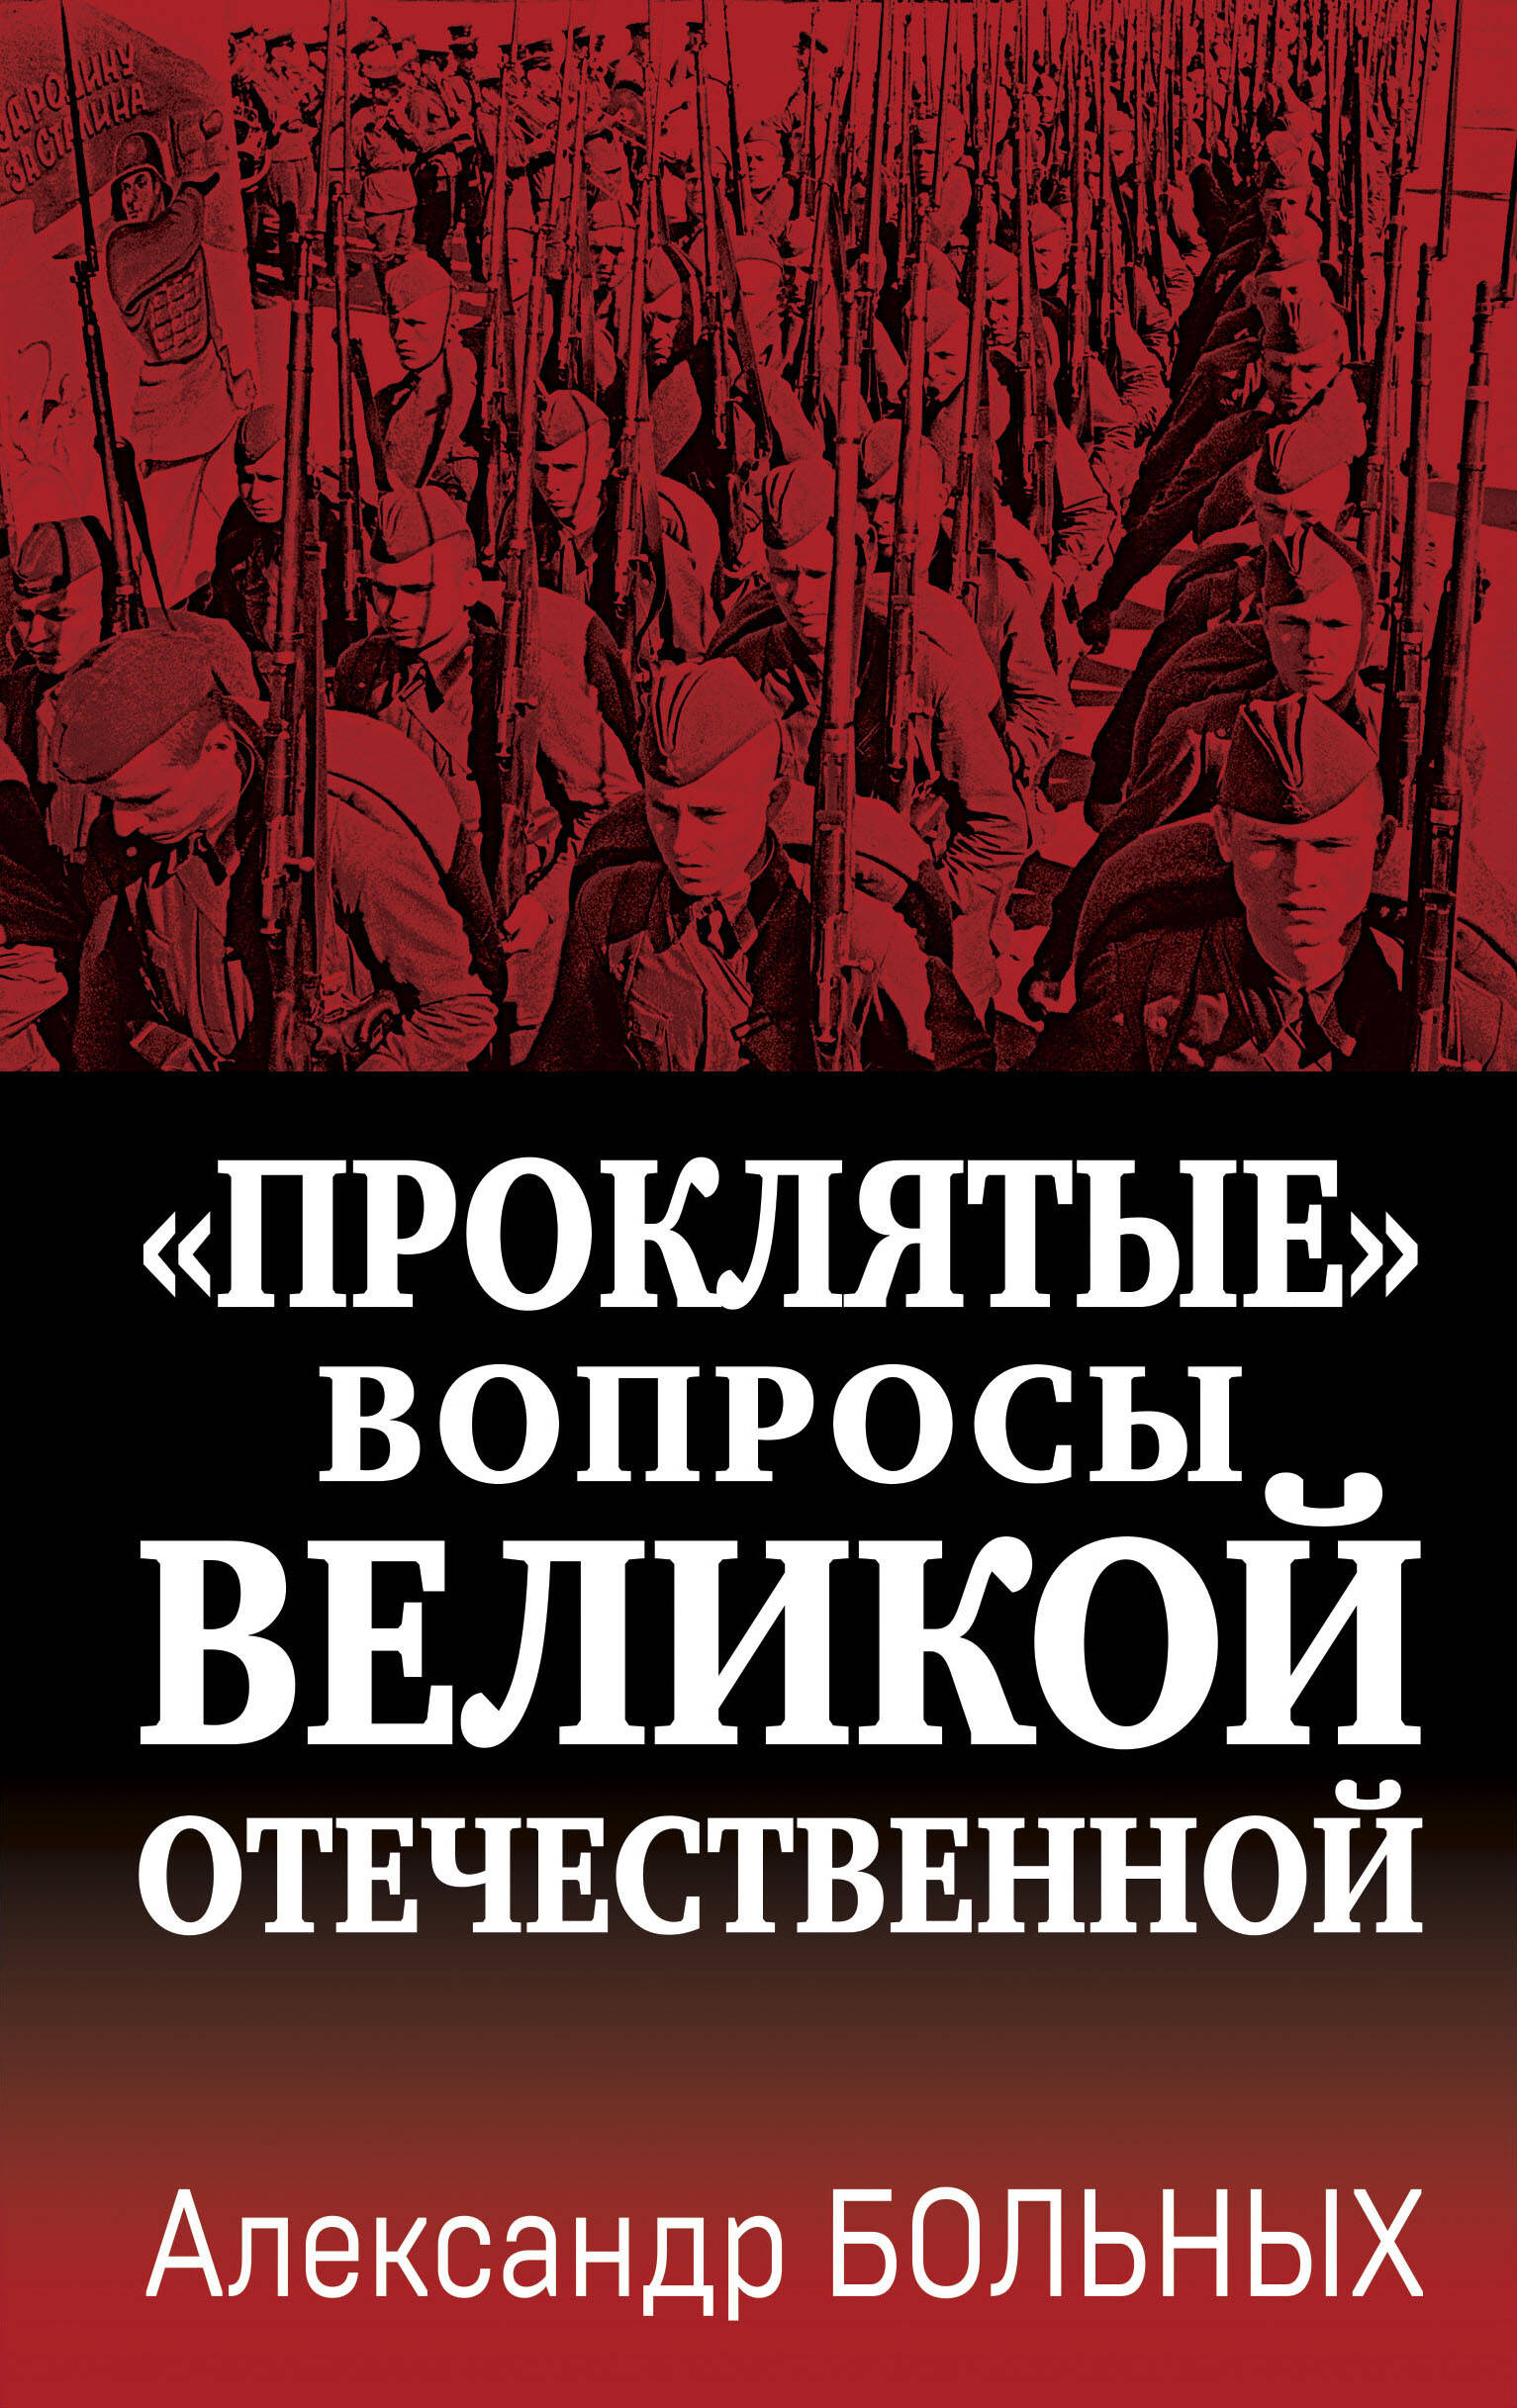  книга «Проклятые» вопросы Великой Отечественной